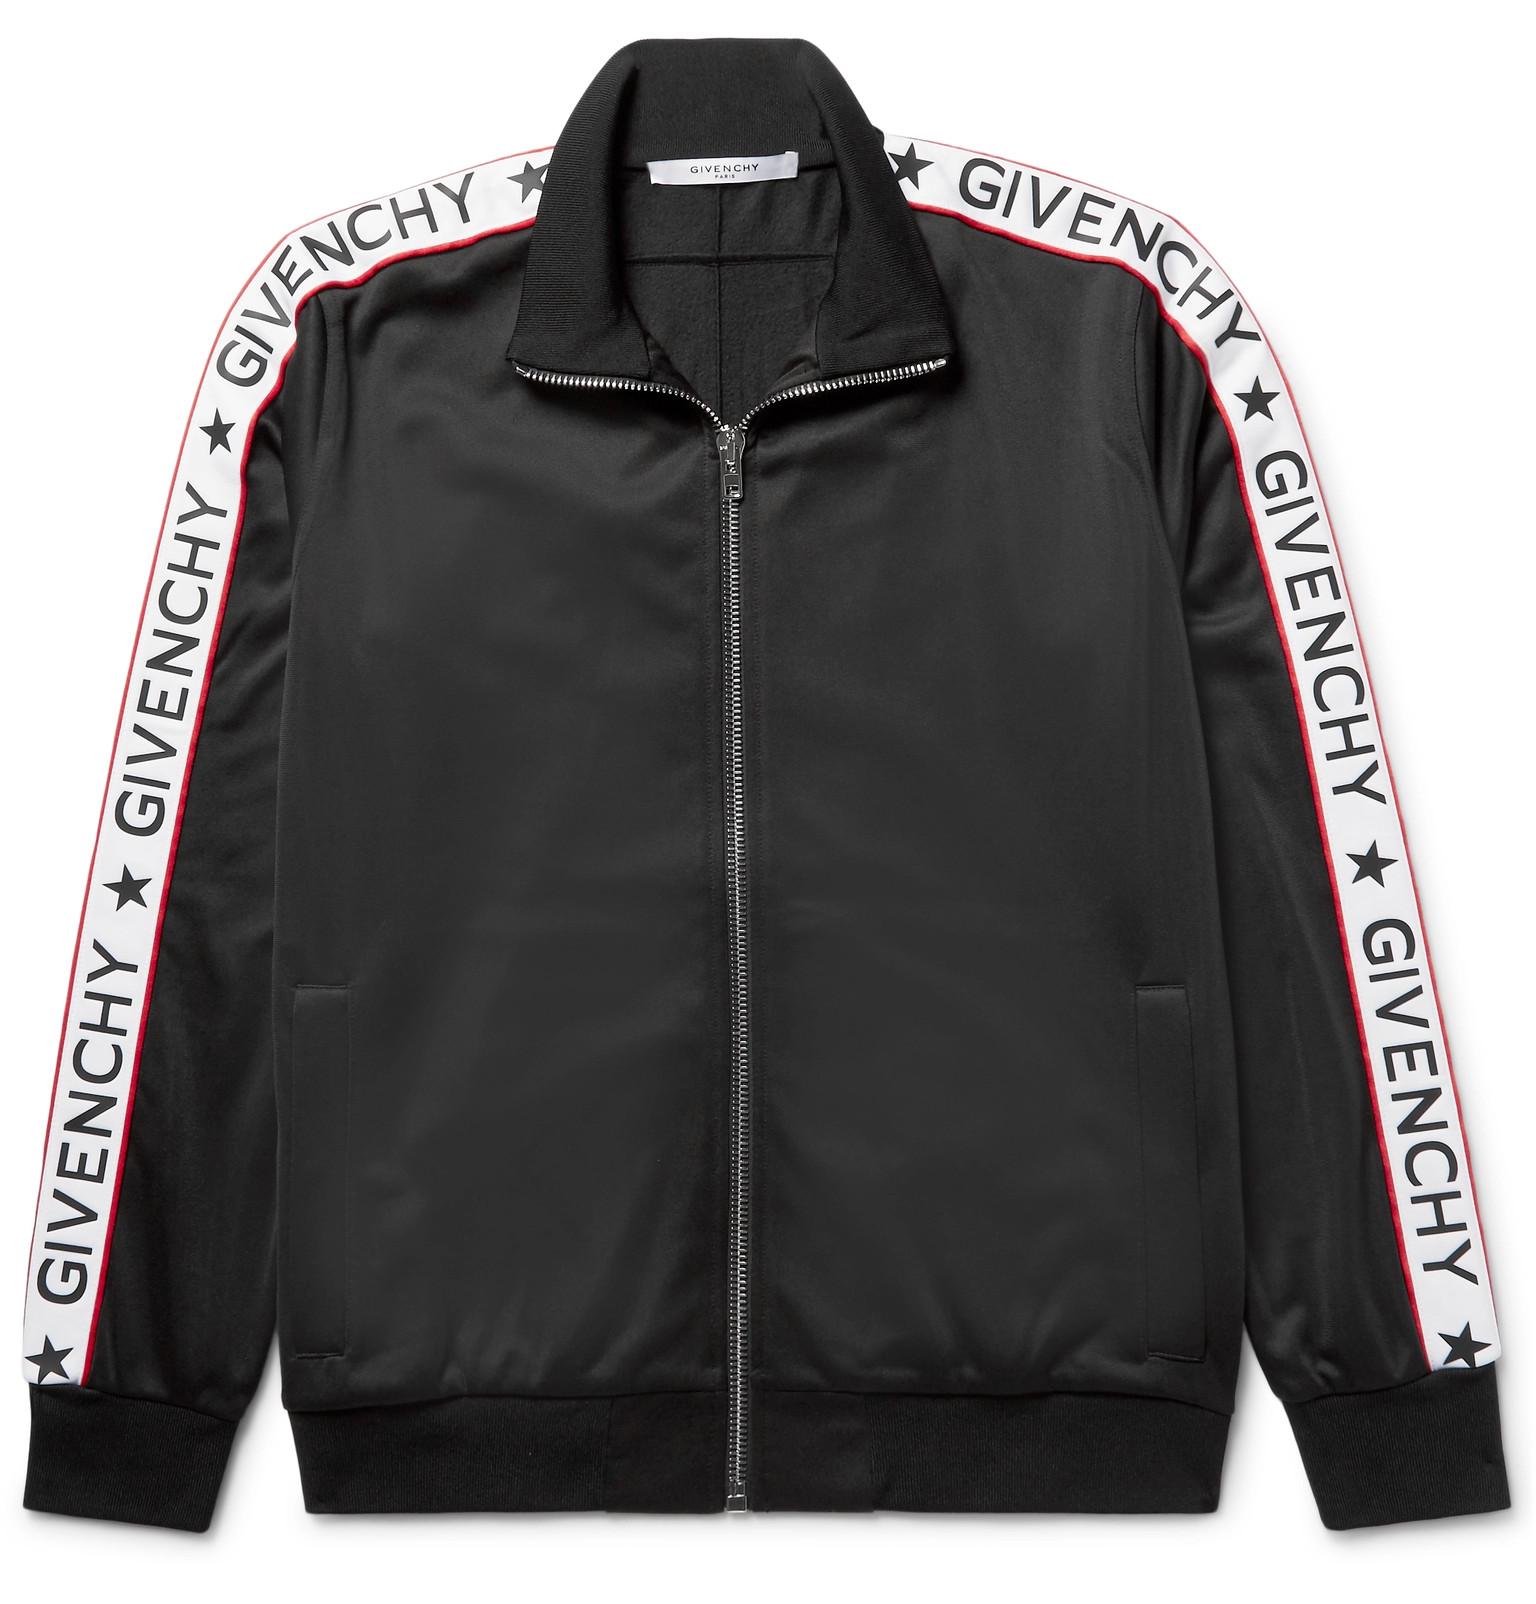 Givenchy Rubber-appliquéd Satin-jersey Track Jacket in Black for Men - Lyst